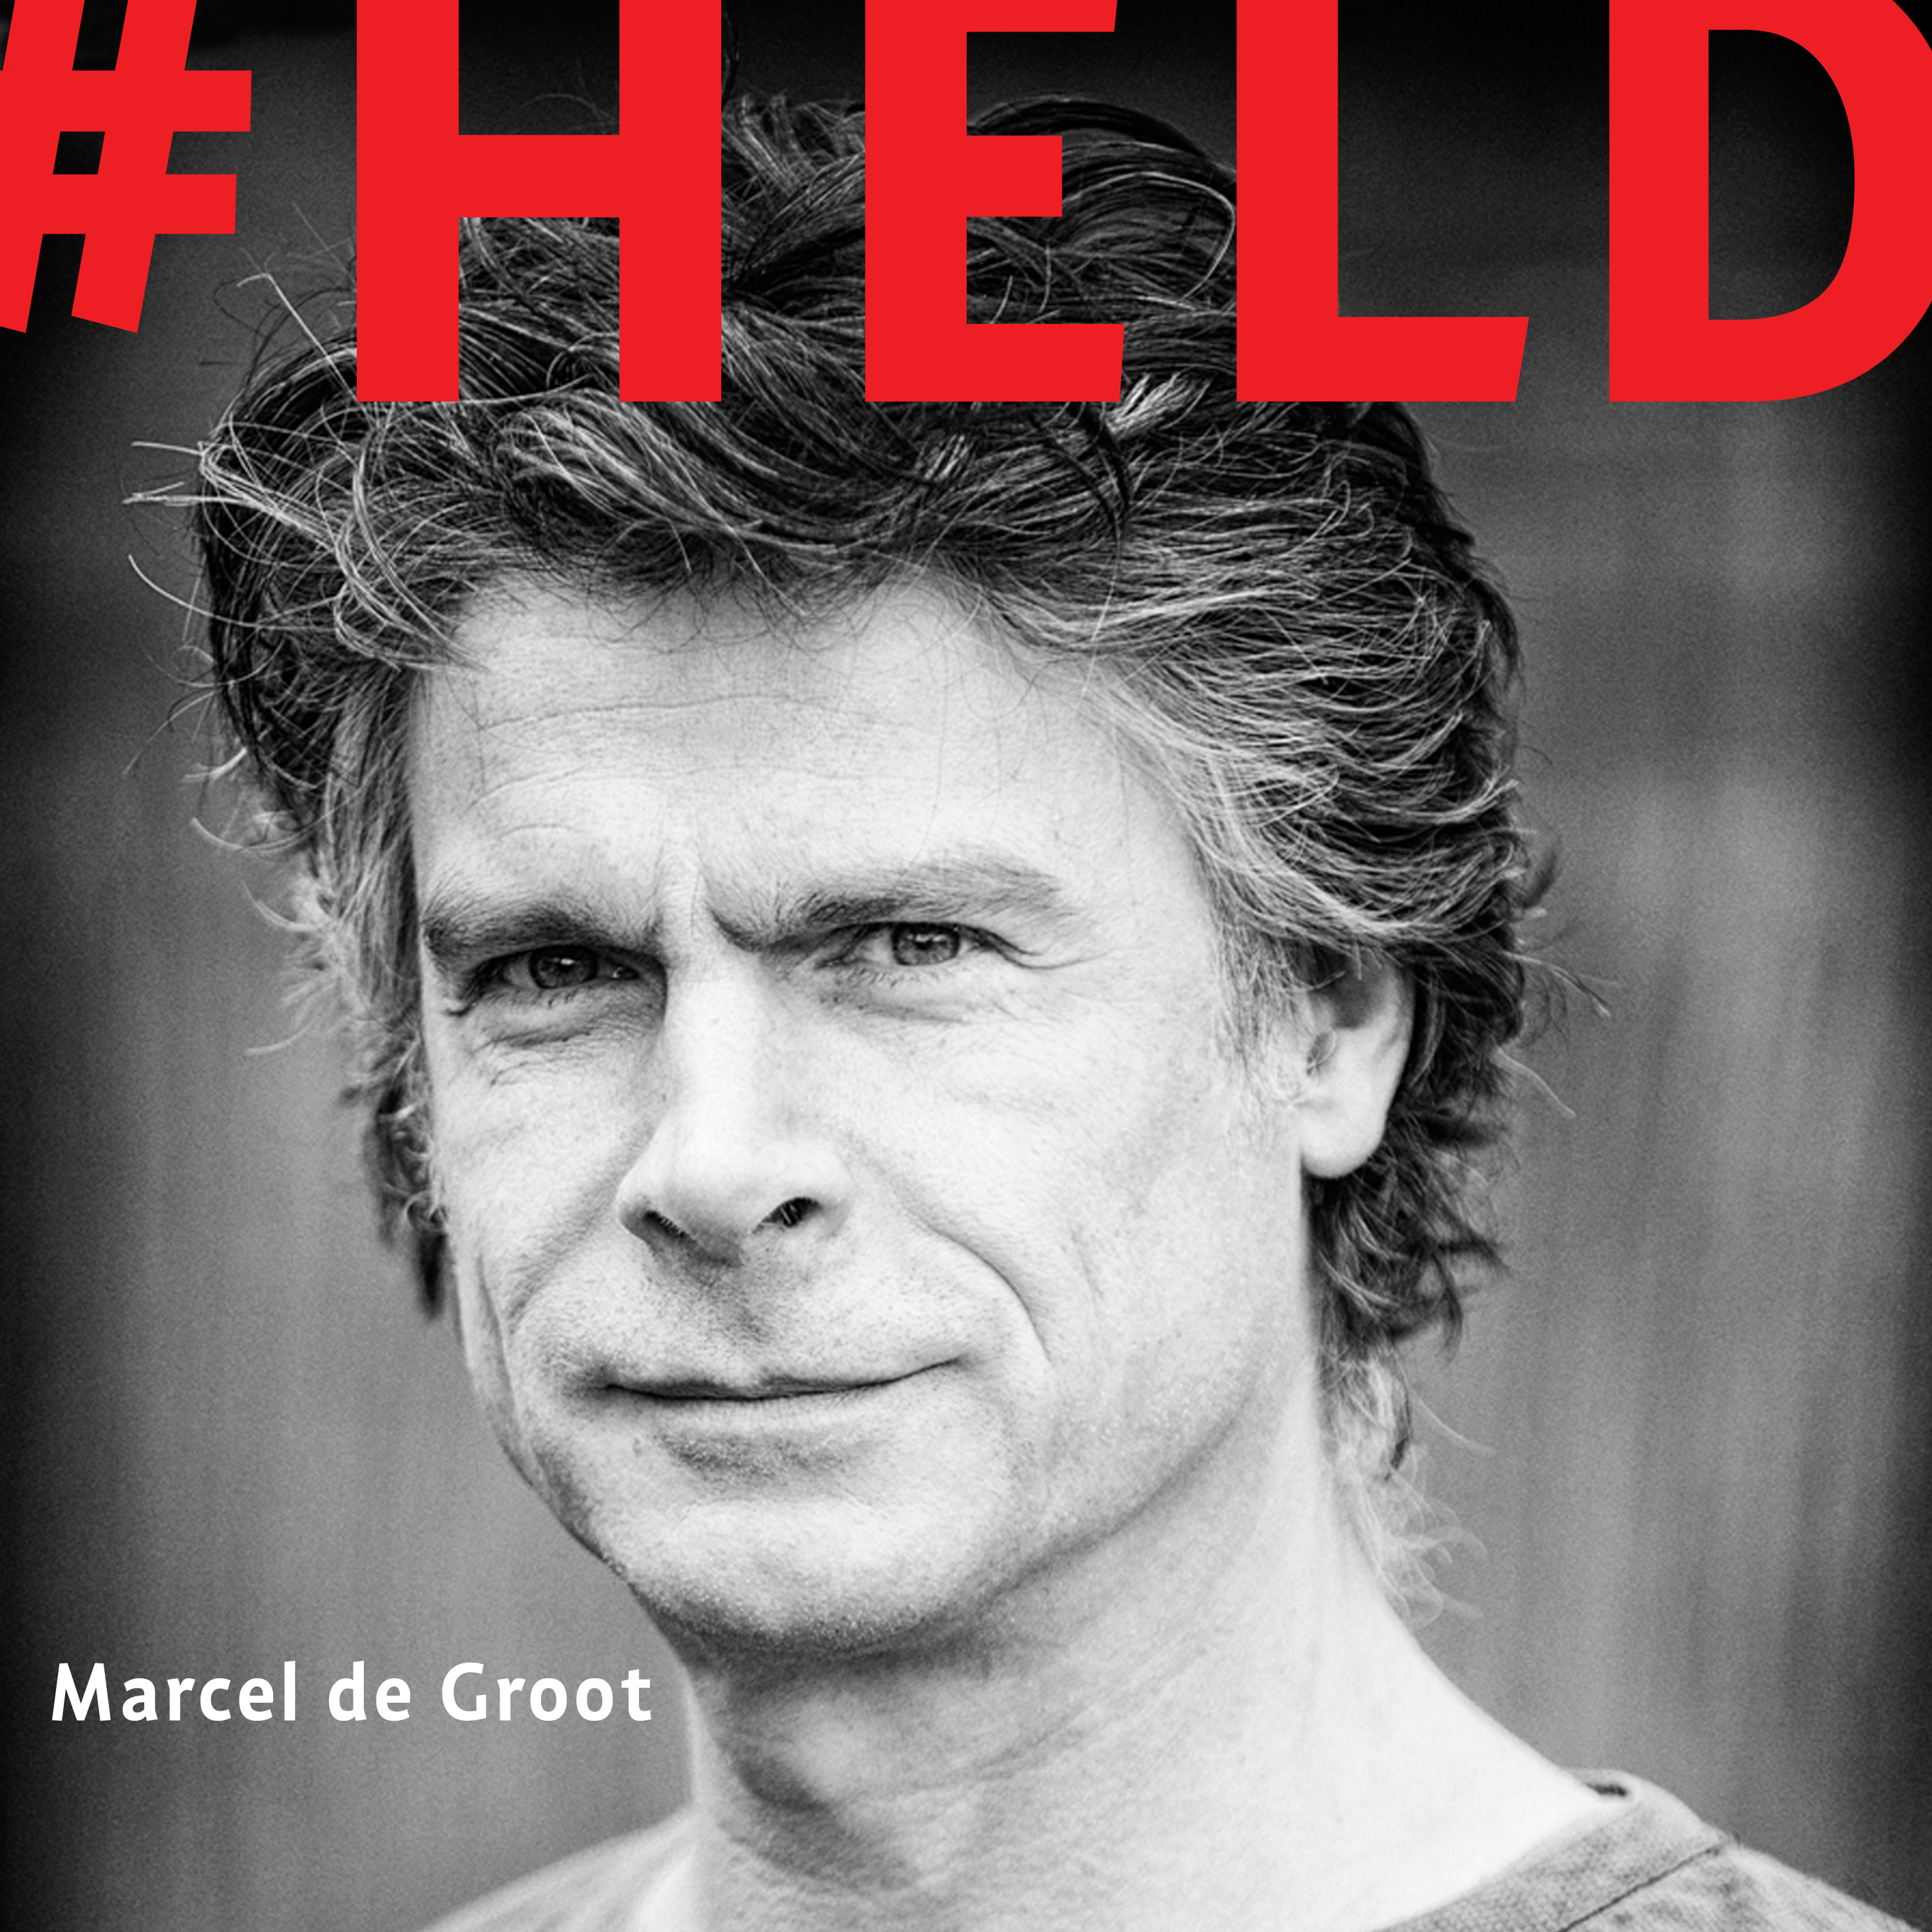 Marcel de Groot